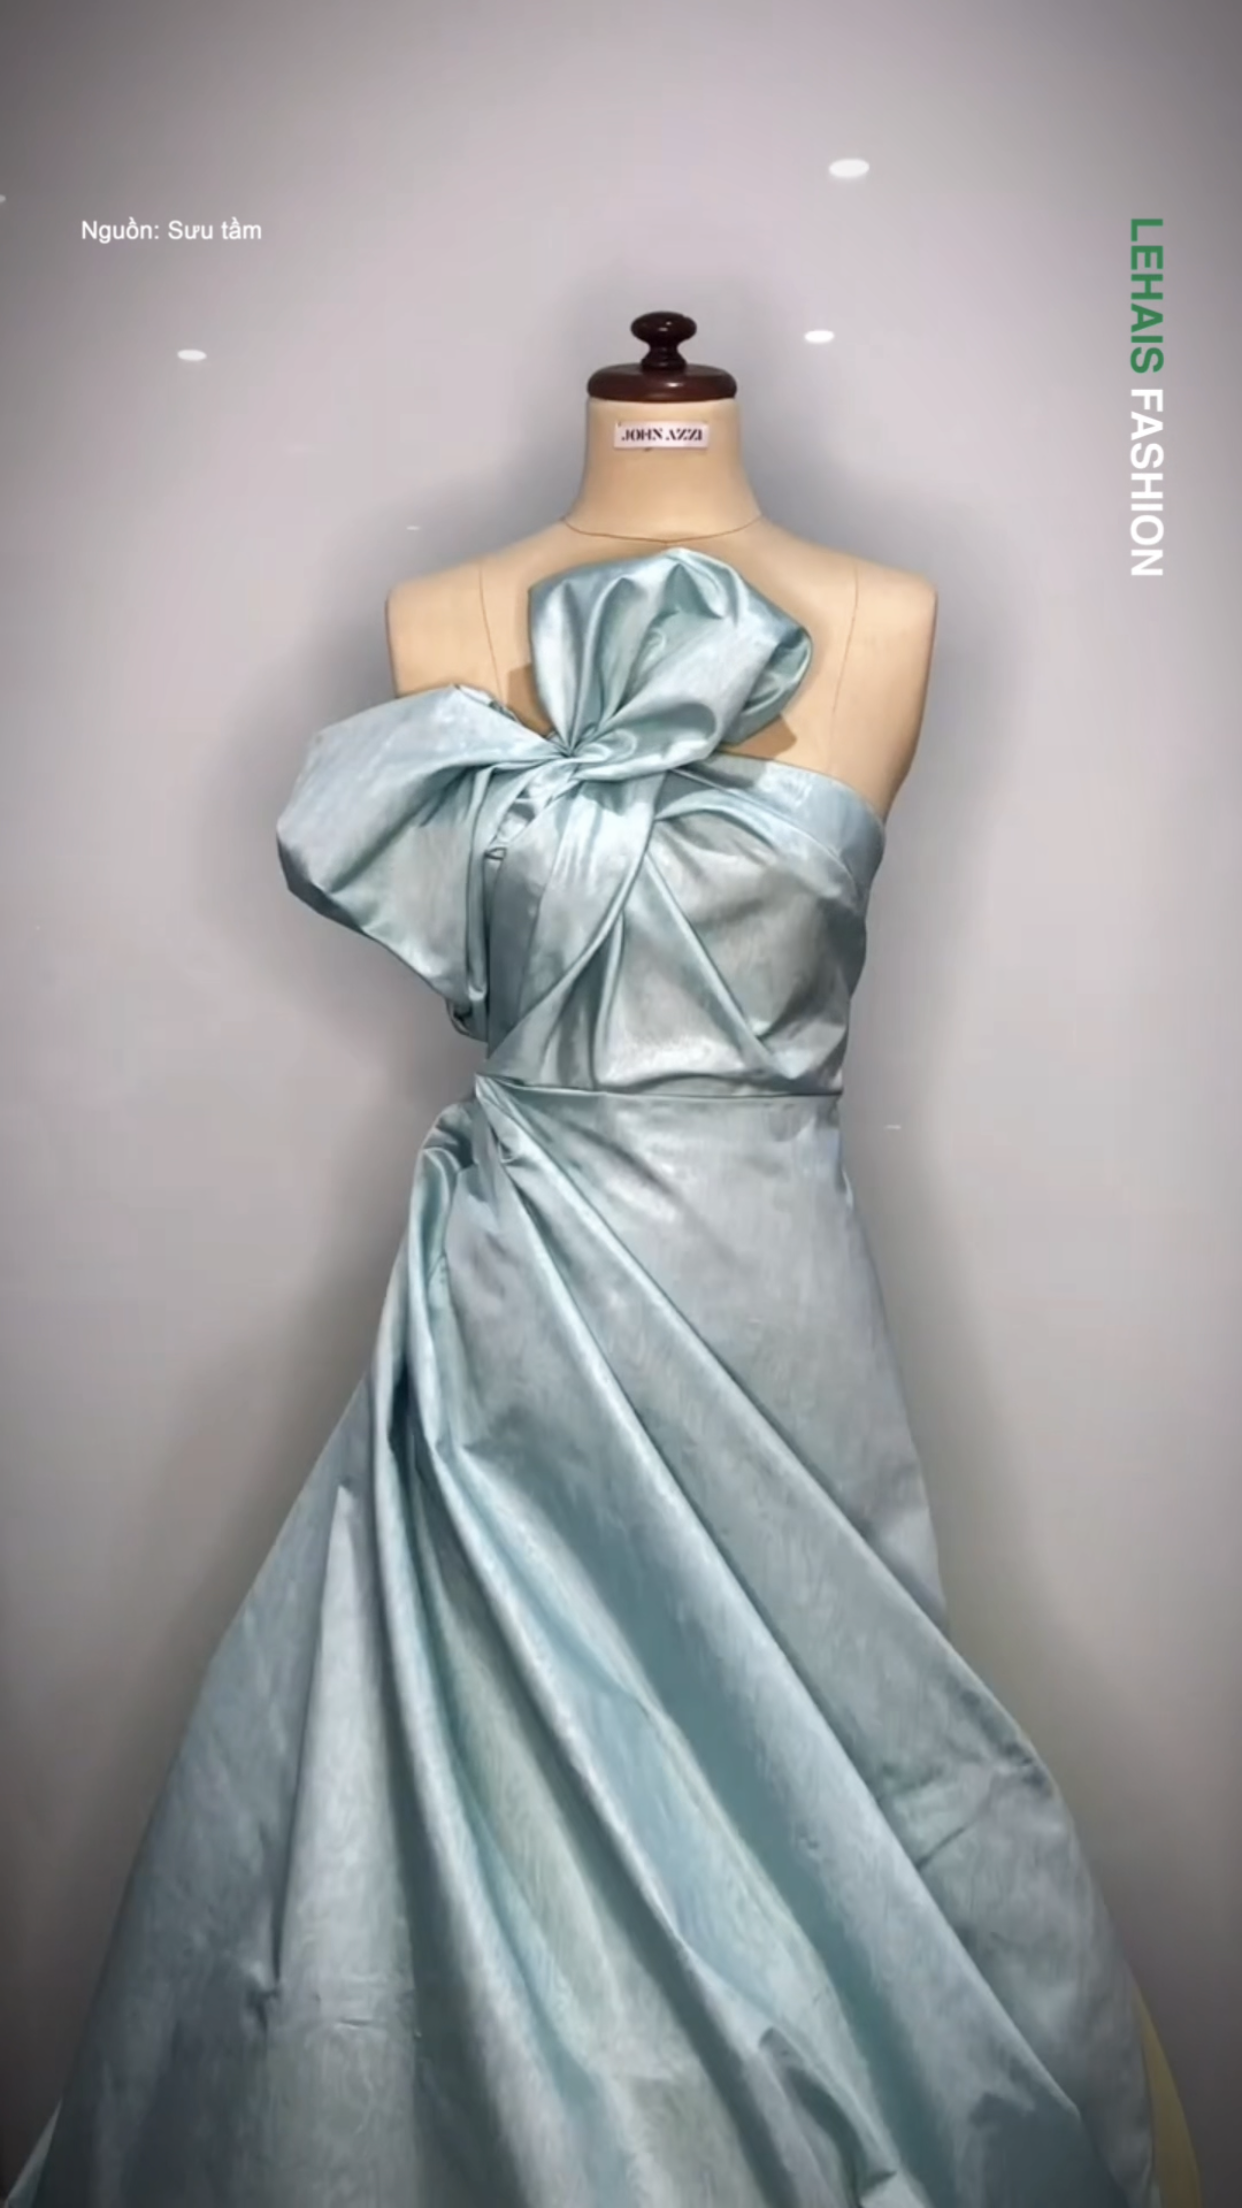 Thiết kế chiếc váy màu xanh ngọc cực đáng yêu 1